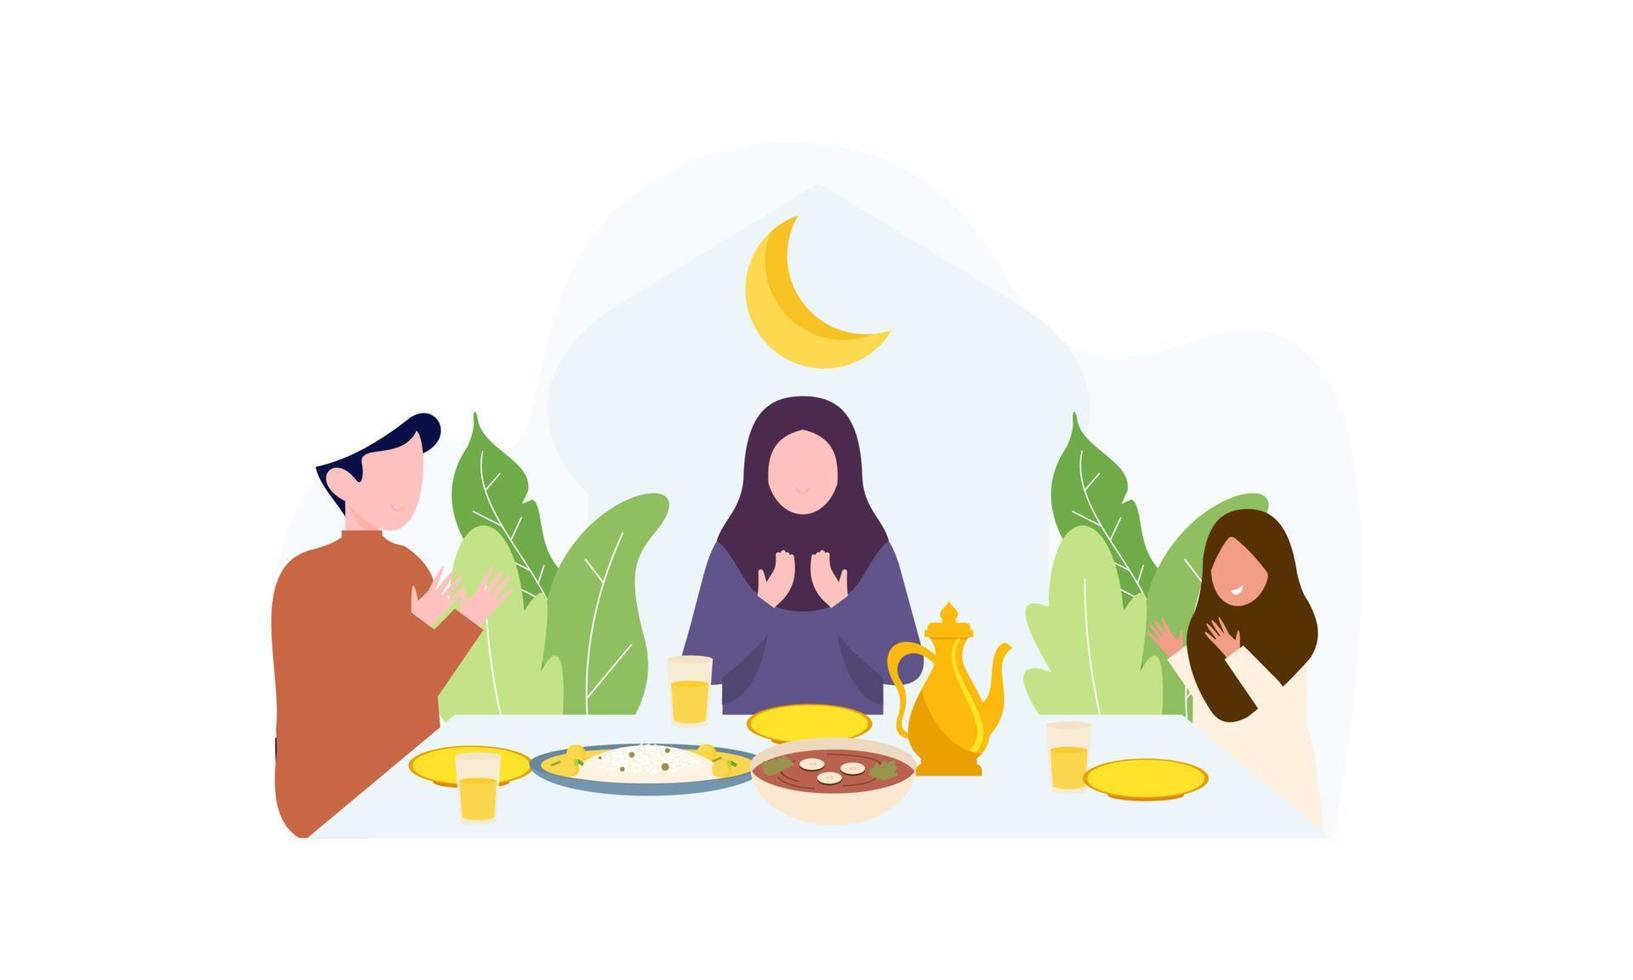 iftar fest med familj under ramadan, måltid med muslim familj, ramadan fasta illustration vektor